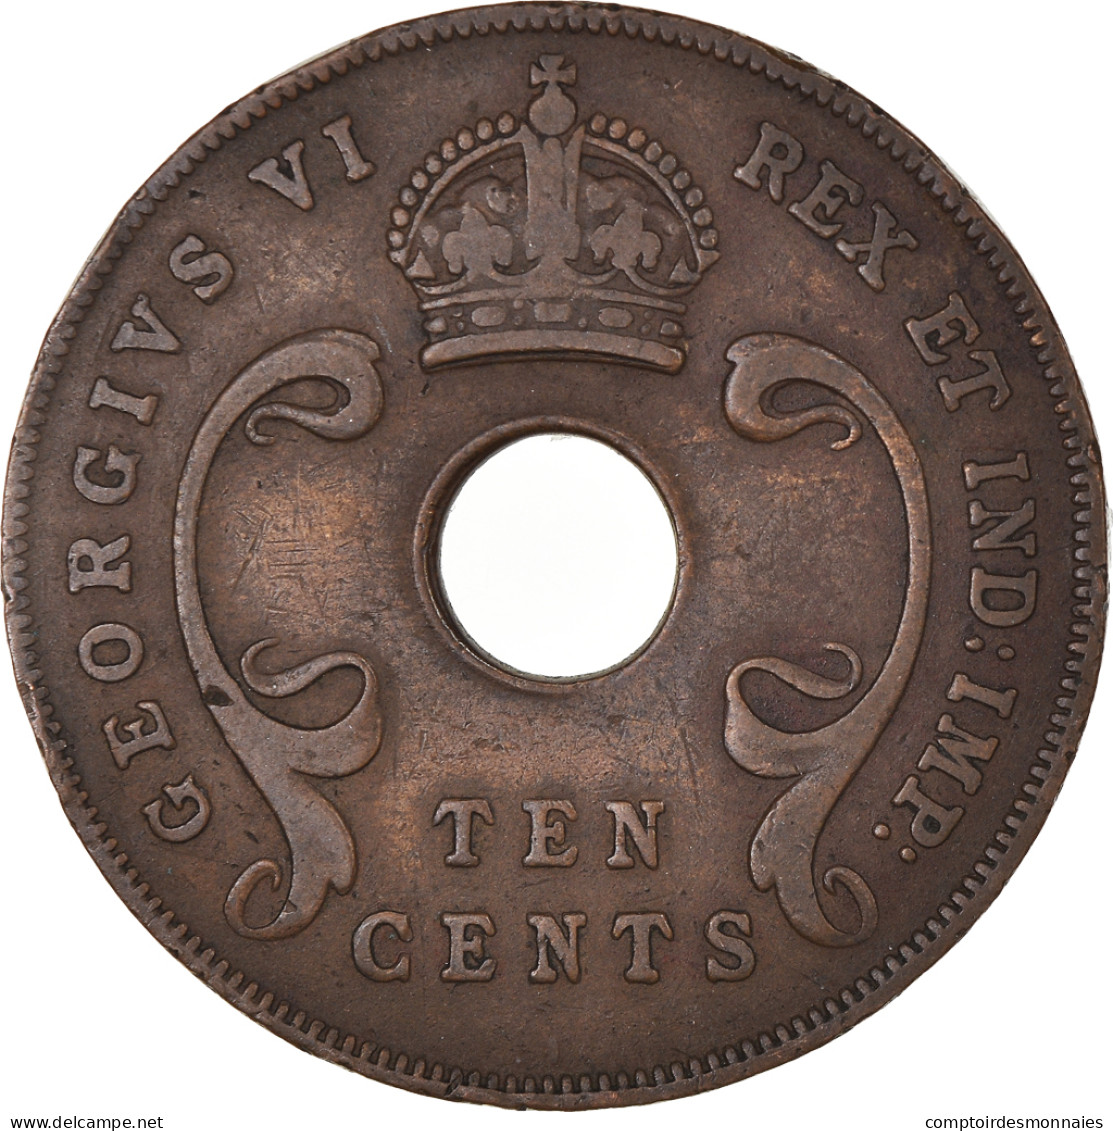 Monnaie, Afrique Orientale, George VI, 10 Cents, 1941, TTB, Bronze, KM:26.1 - Colonie Britannique